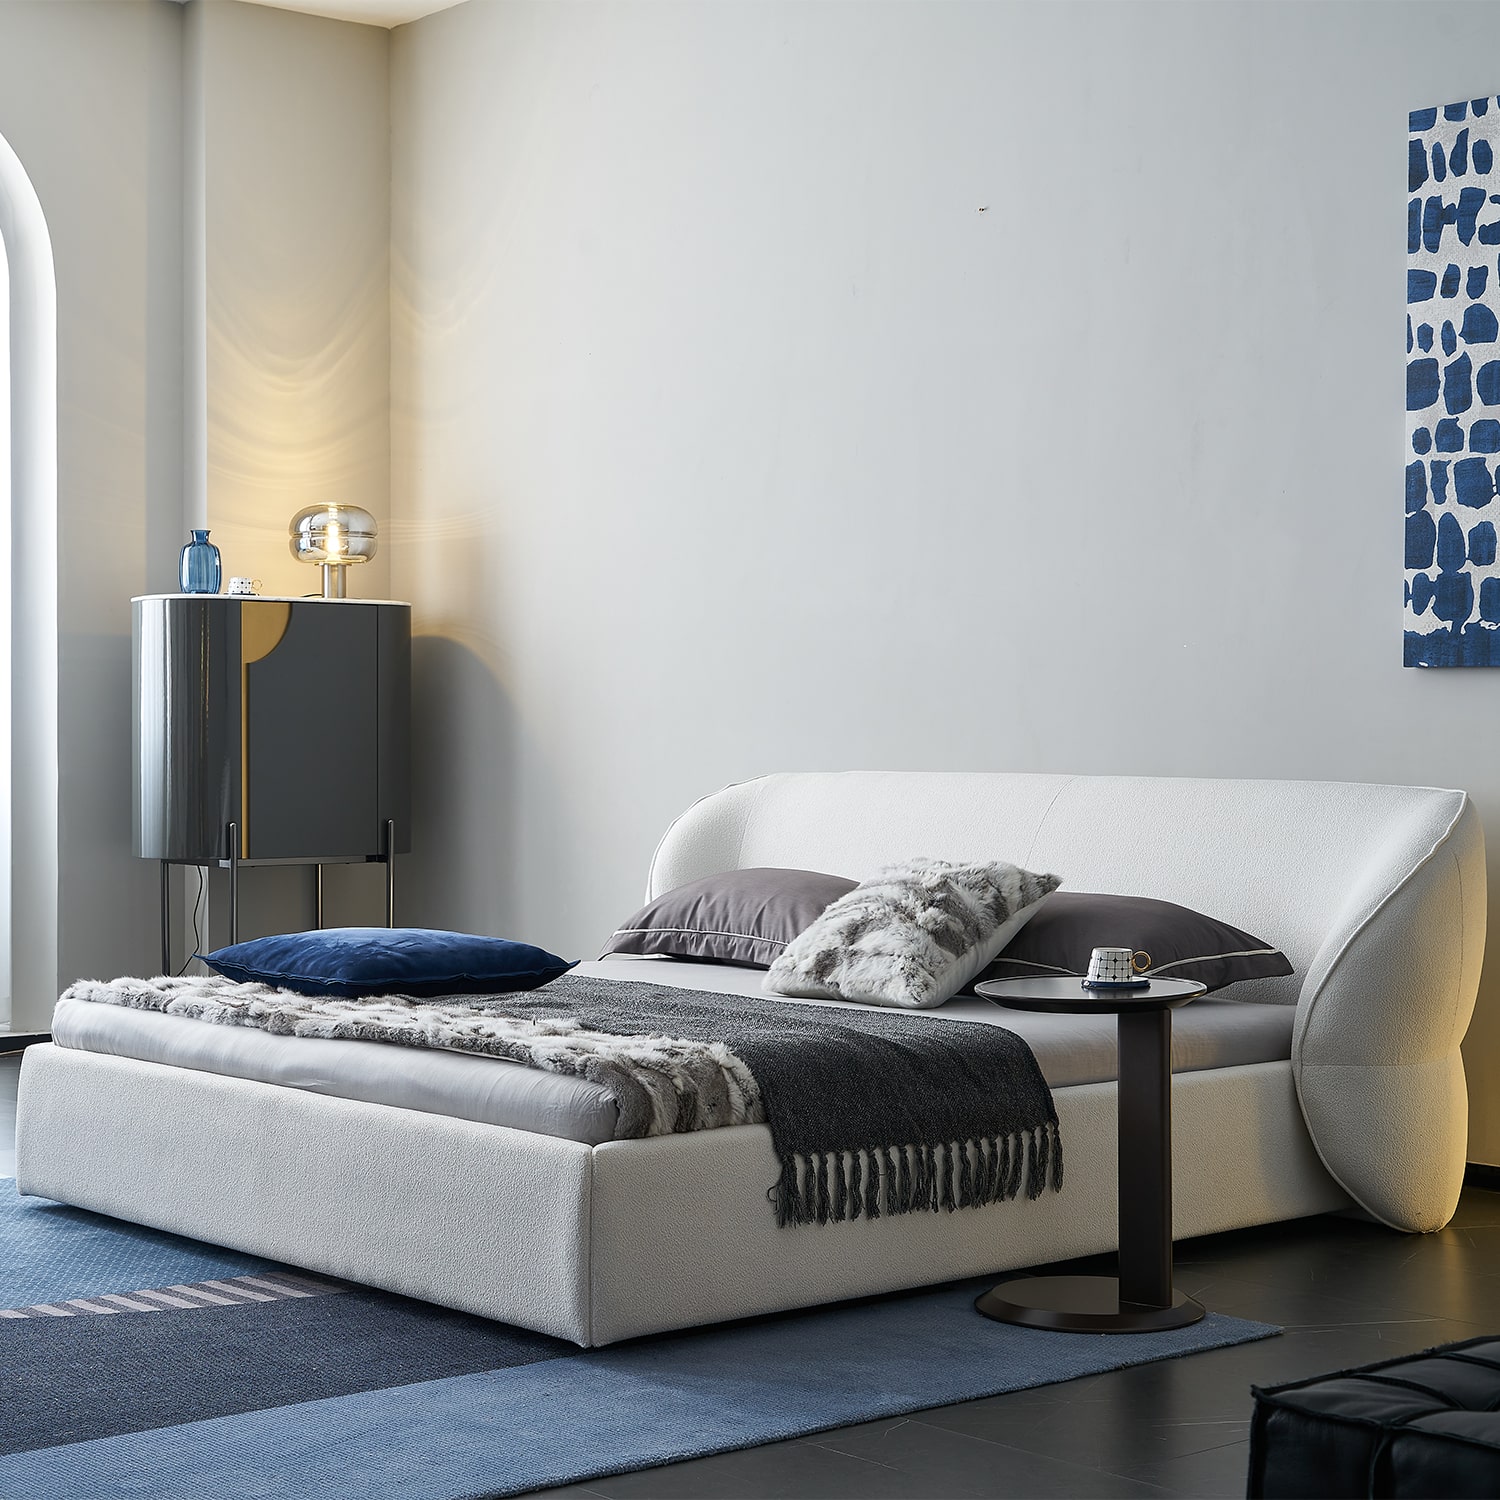 מיטה זוגית מעוצבת דגם PETRA במבחר מידות וגדלים לבחירה.